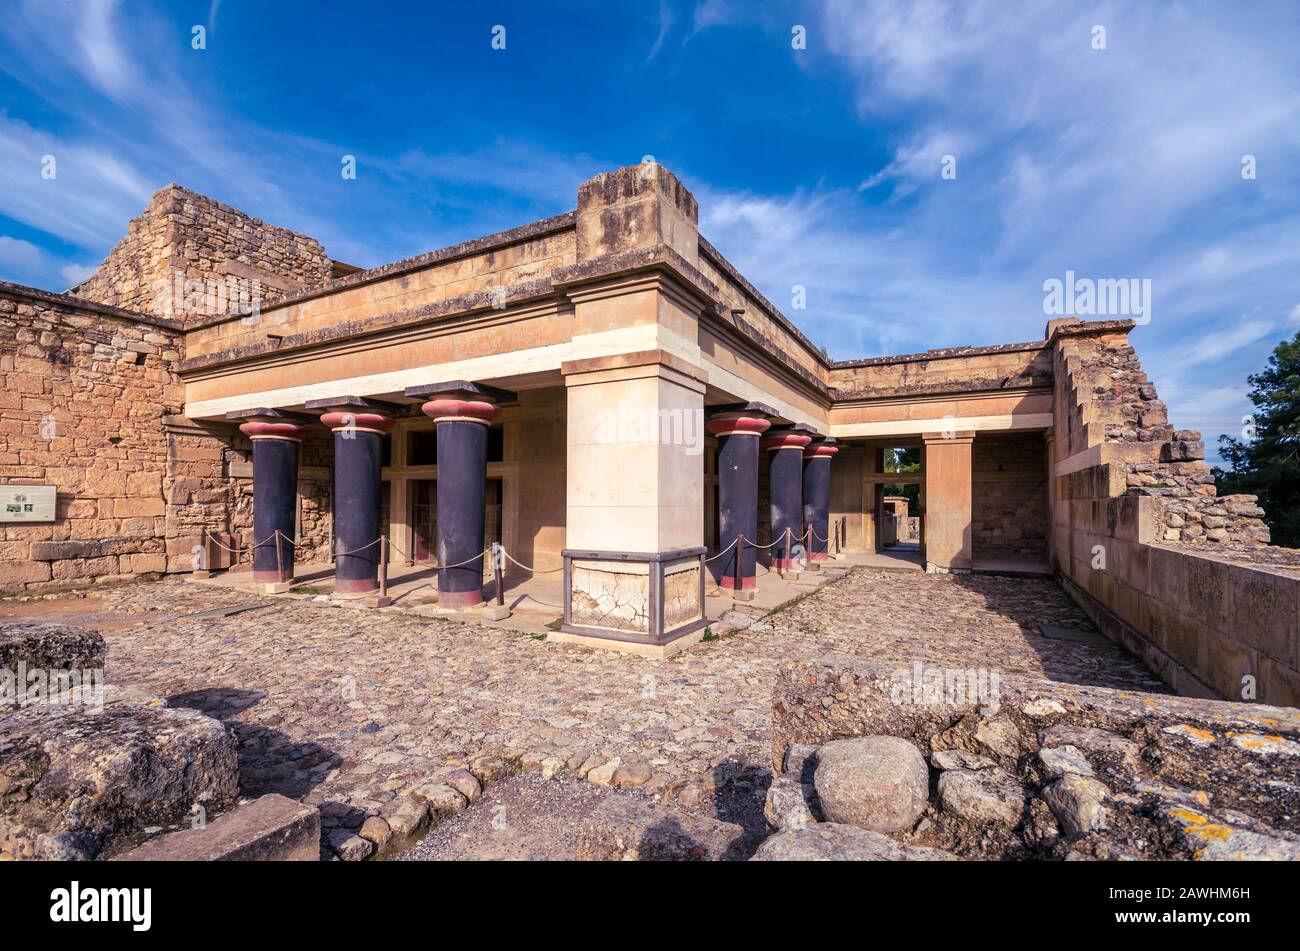 Knossos - vue sur les ruines du célèbre palais minoen de Knossos, le centre de la civilisation minoenne et l'un des plus grands sites archéologiques. Banque D'Images